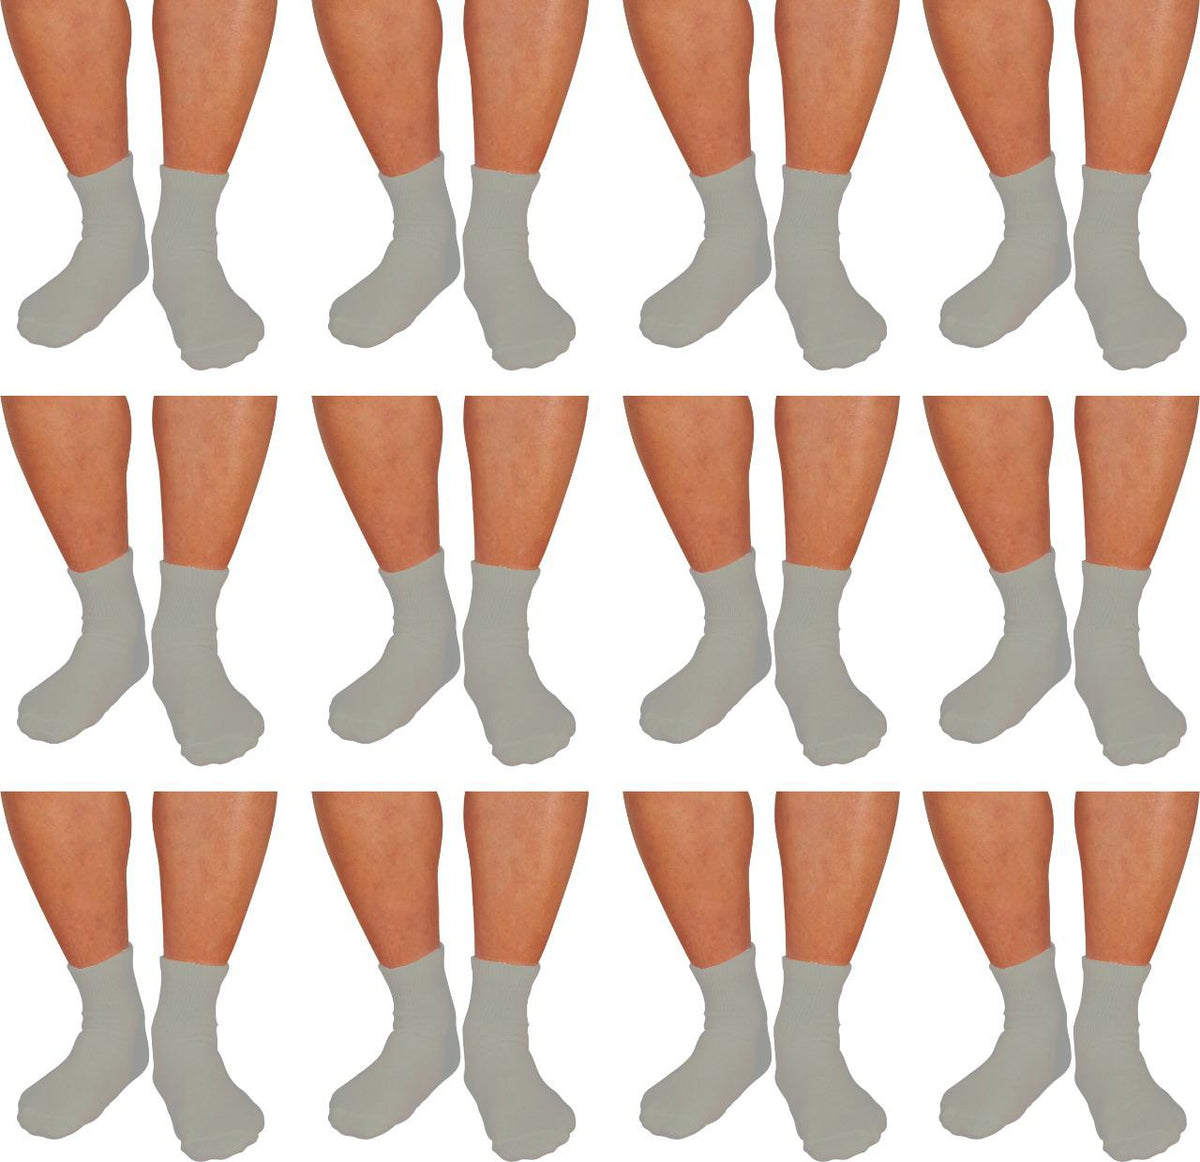 12 PAIRS PACK DIABETIC SOCKS FOR MEN WOMEN NON-BINDING DOCTOR APPROVED –  VINCO SOCKS®